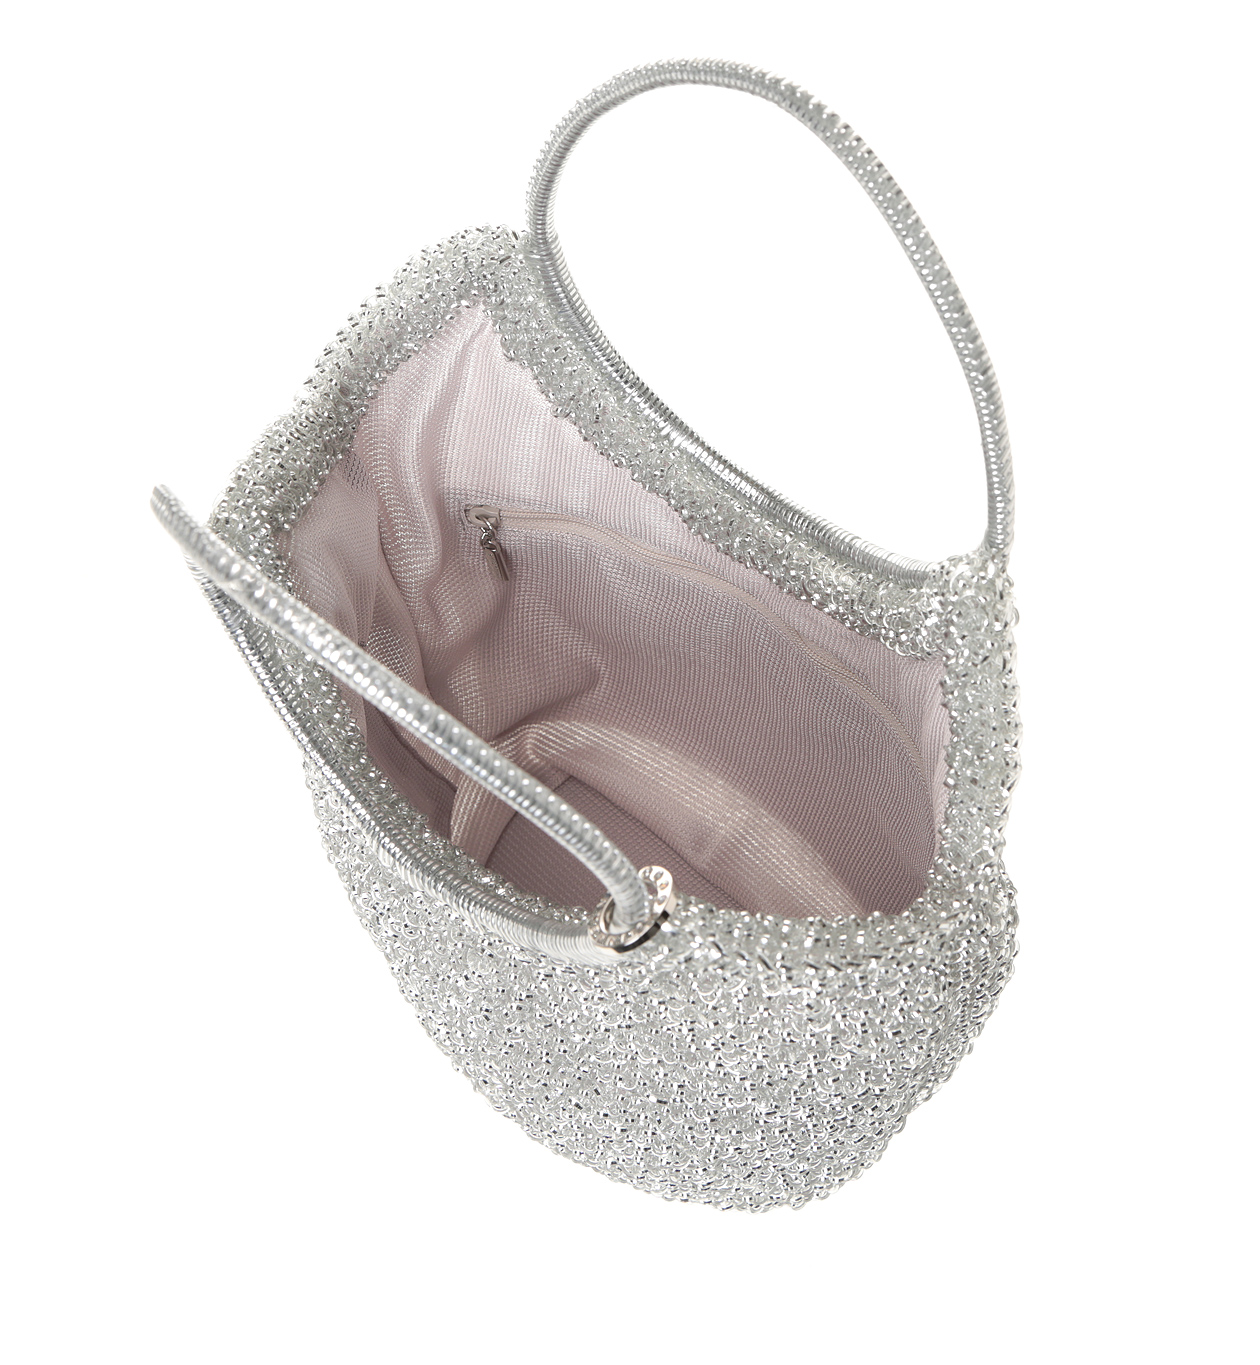 オンラインストア最安値 ✨美品✨ アンテプリマ フィオリトゥーラ バスケット型 バッグ シルバー ハンドバッグ